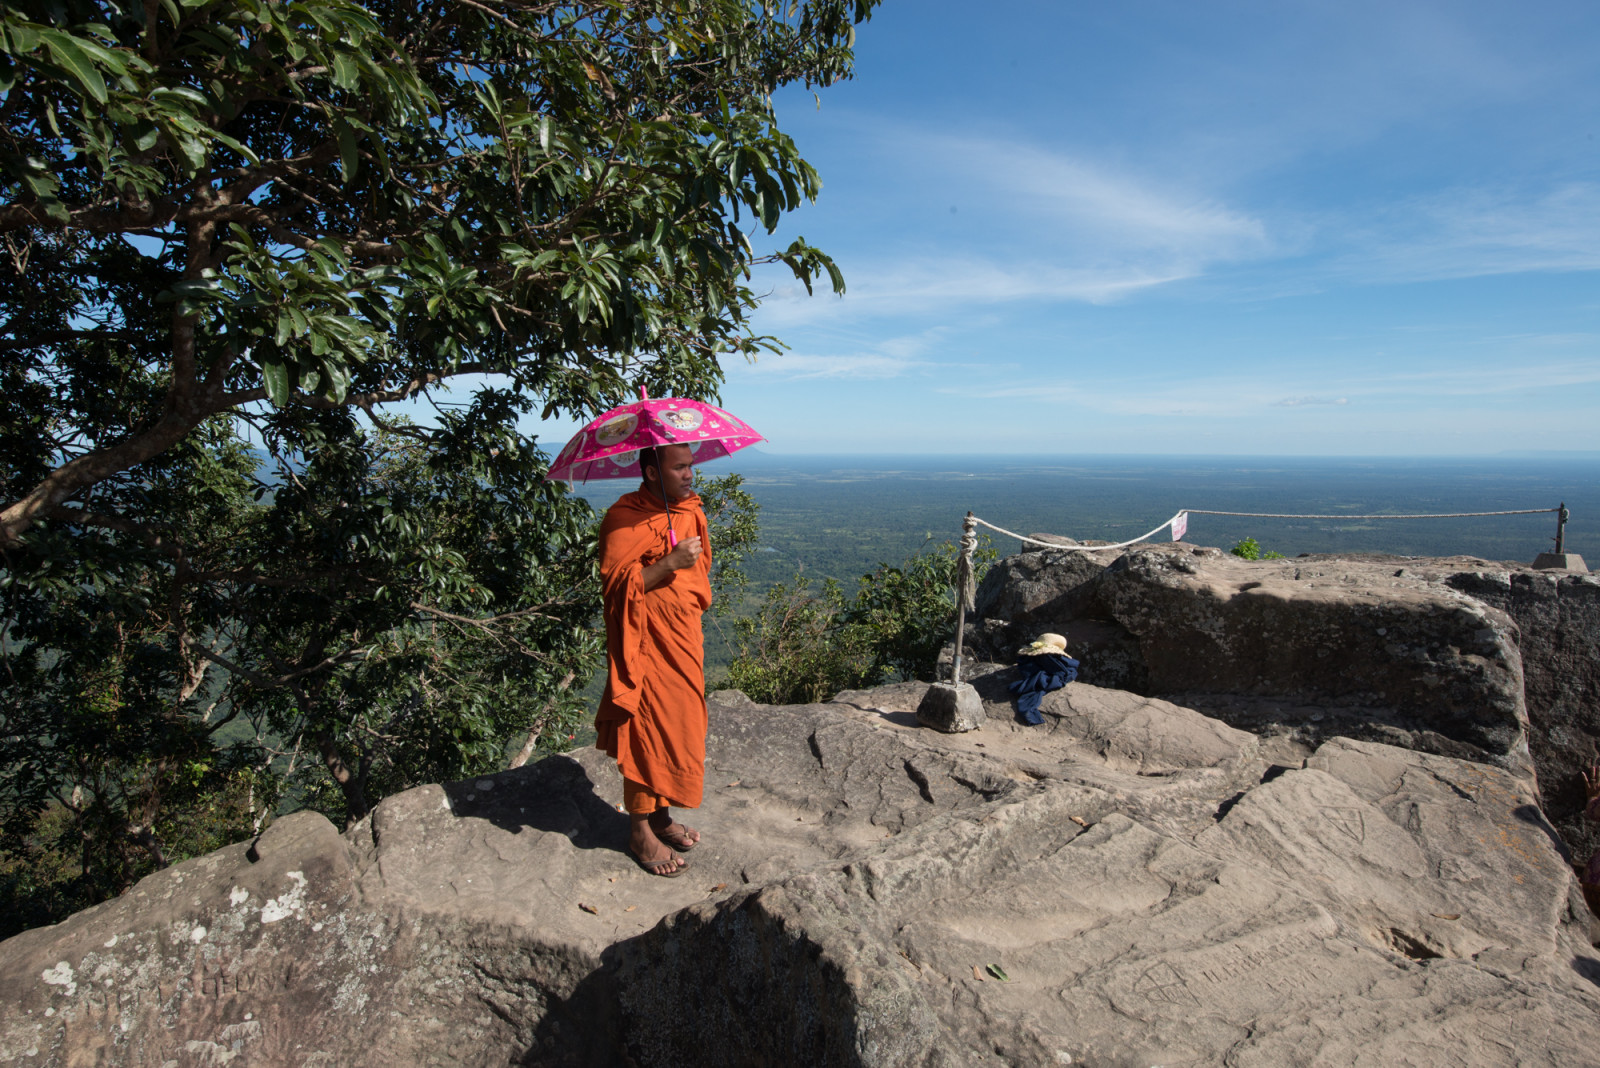 Cambodia photo tours Preah Vihear temple monk holding umbrella